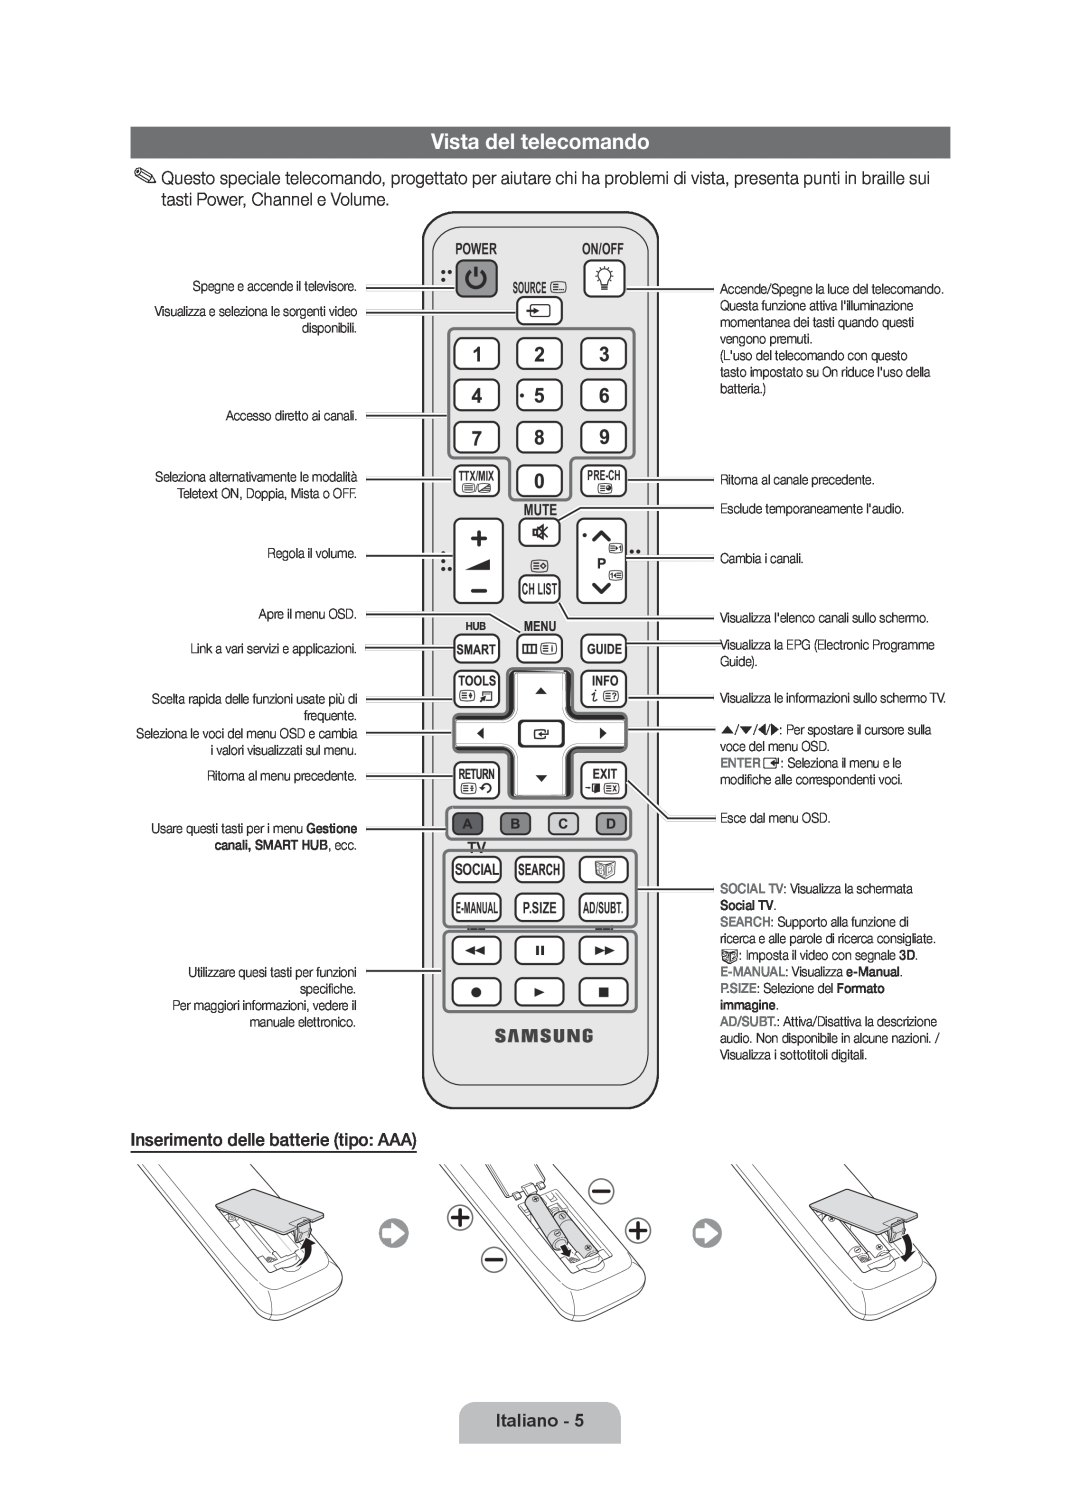 Samsung UE46D6510WSXZG manual Vista del telecomando, Inserimento delle batterie tipo AAA, Italiano, Power On/Off Source 